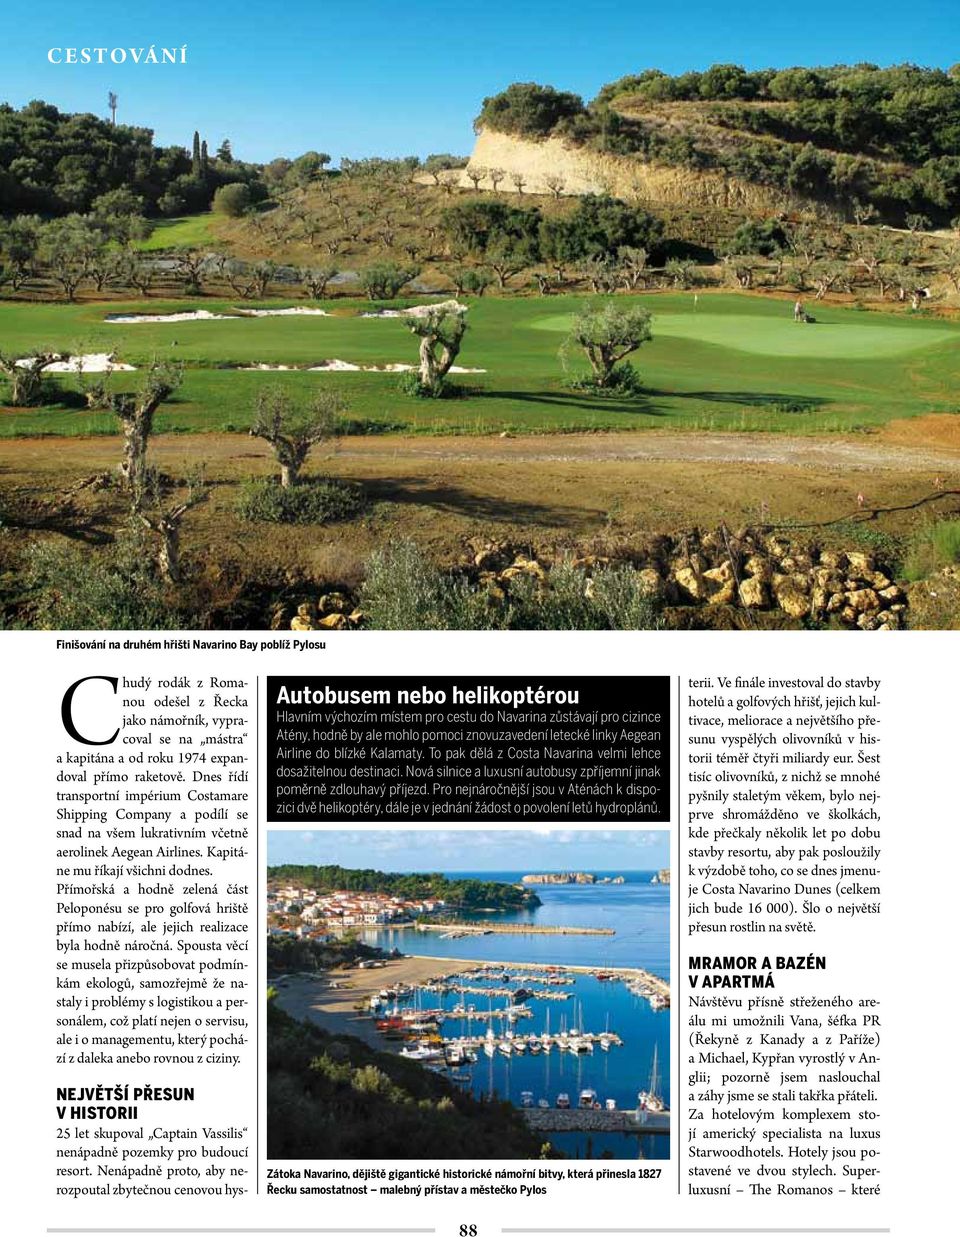 Přímořská a hodně zelená část Peloponésu se pro golfová hriště přímo nabízí, ale jejich realizace byla hodně náročná.